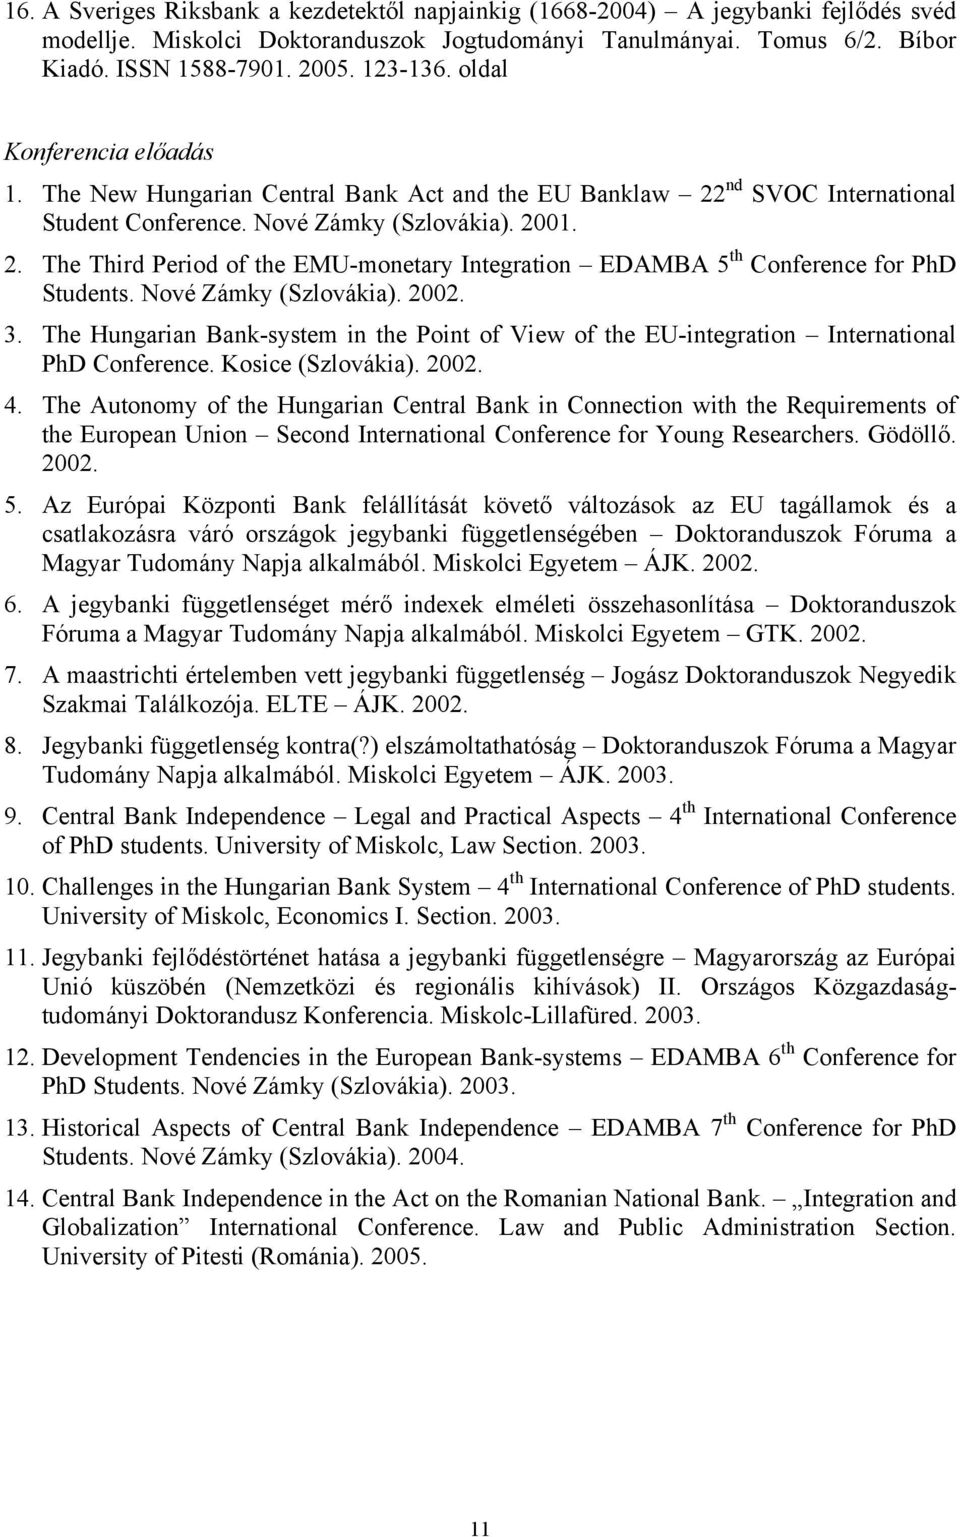 Nové Zámky (Szlovákia). 2002. 3. The Hungarian Bank-system in the Point of View of the EU-integration International PhD Conference. Kosice (Szlovákia). 2002. 4.